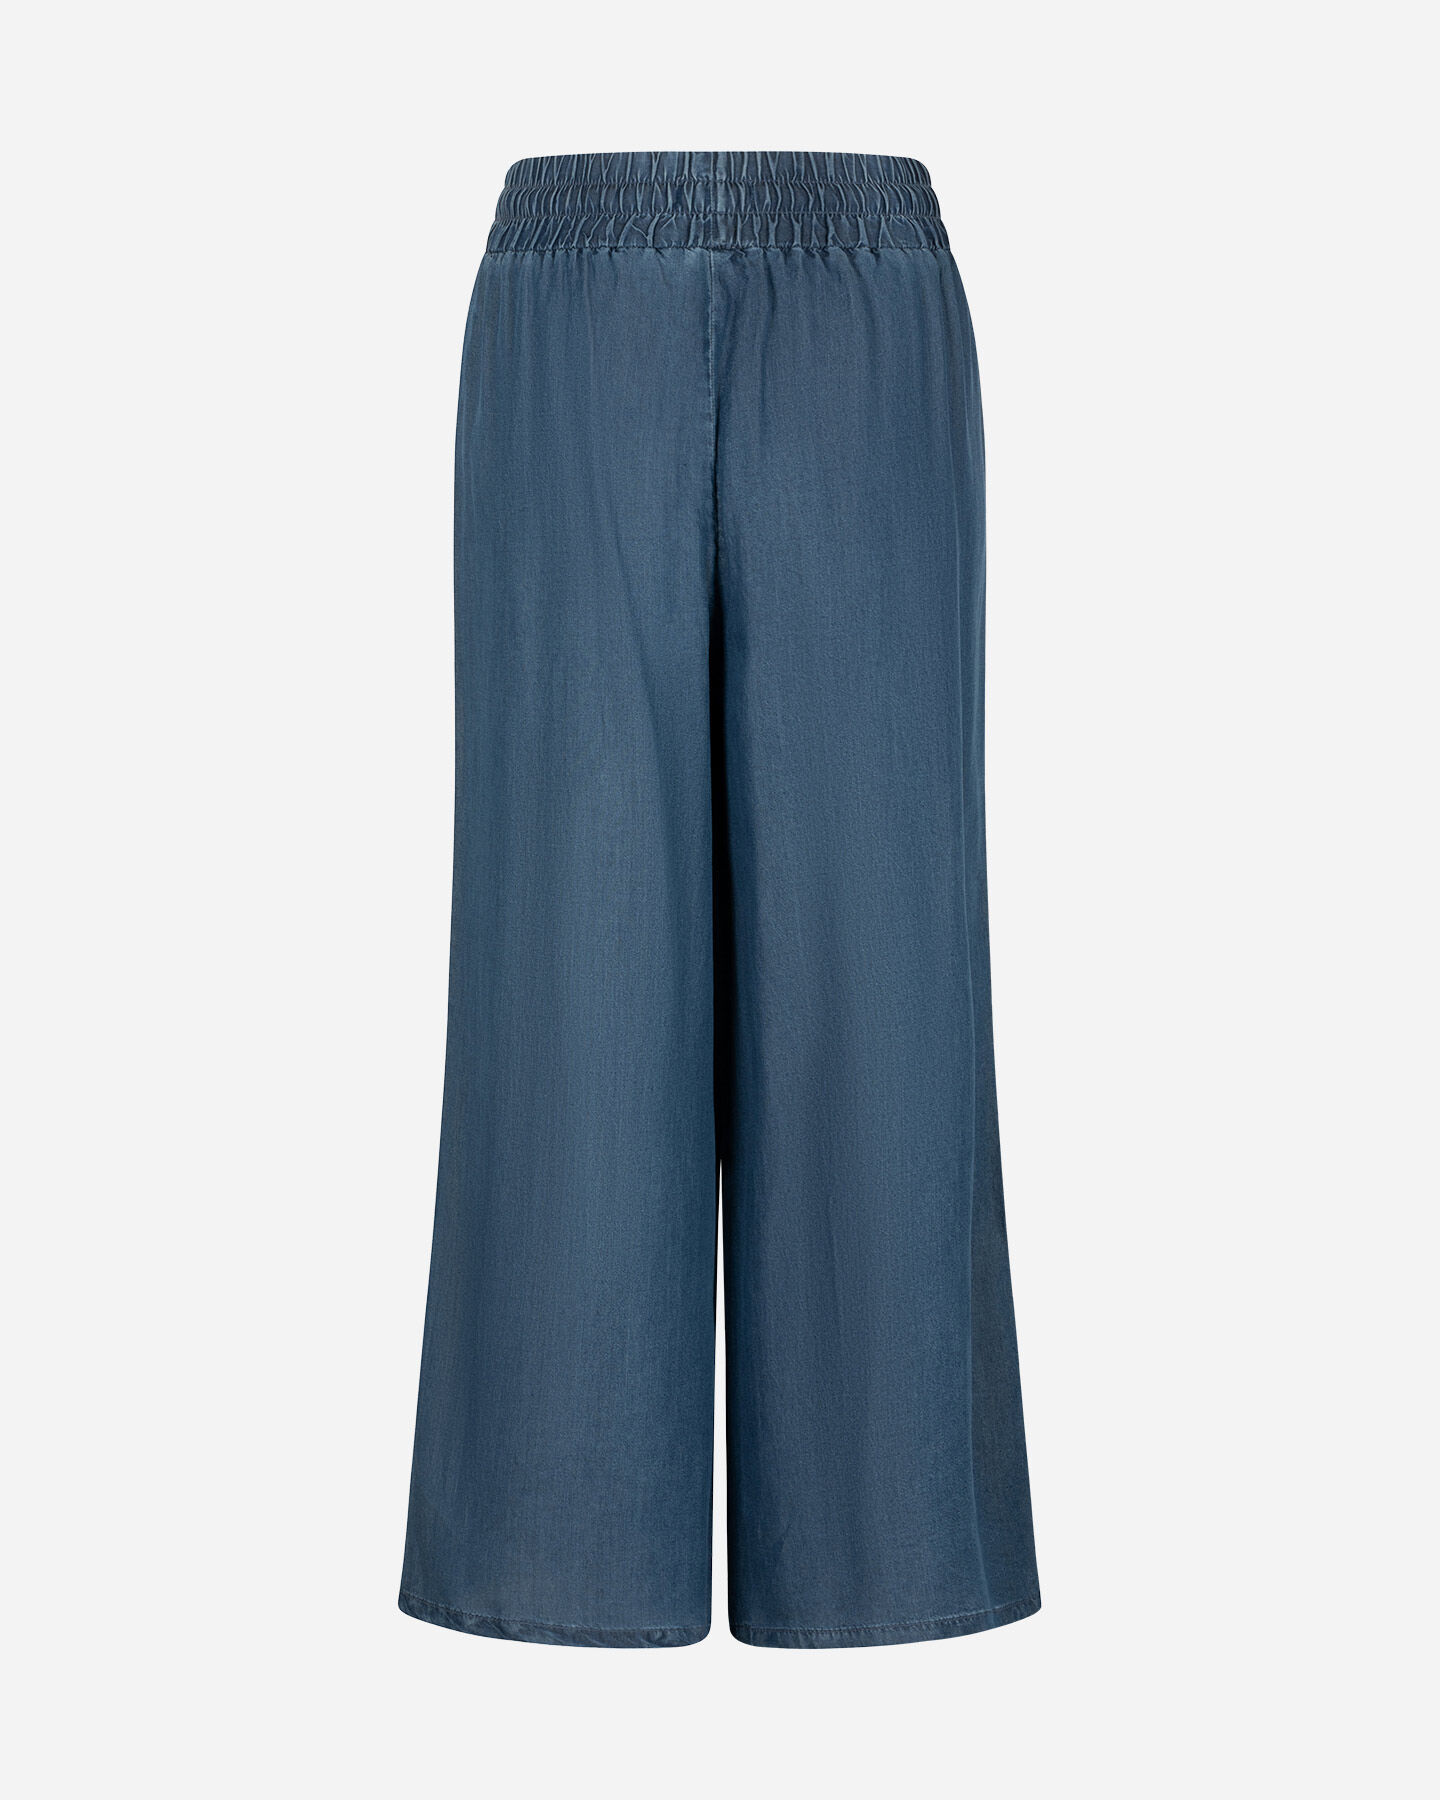  Pantalone DACK'S URBAN W S4129752|MD|XS scatto 1